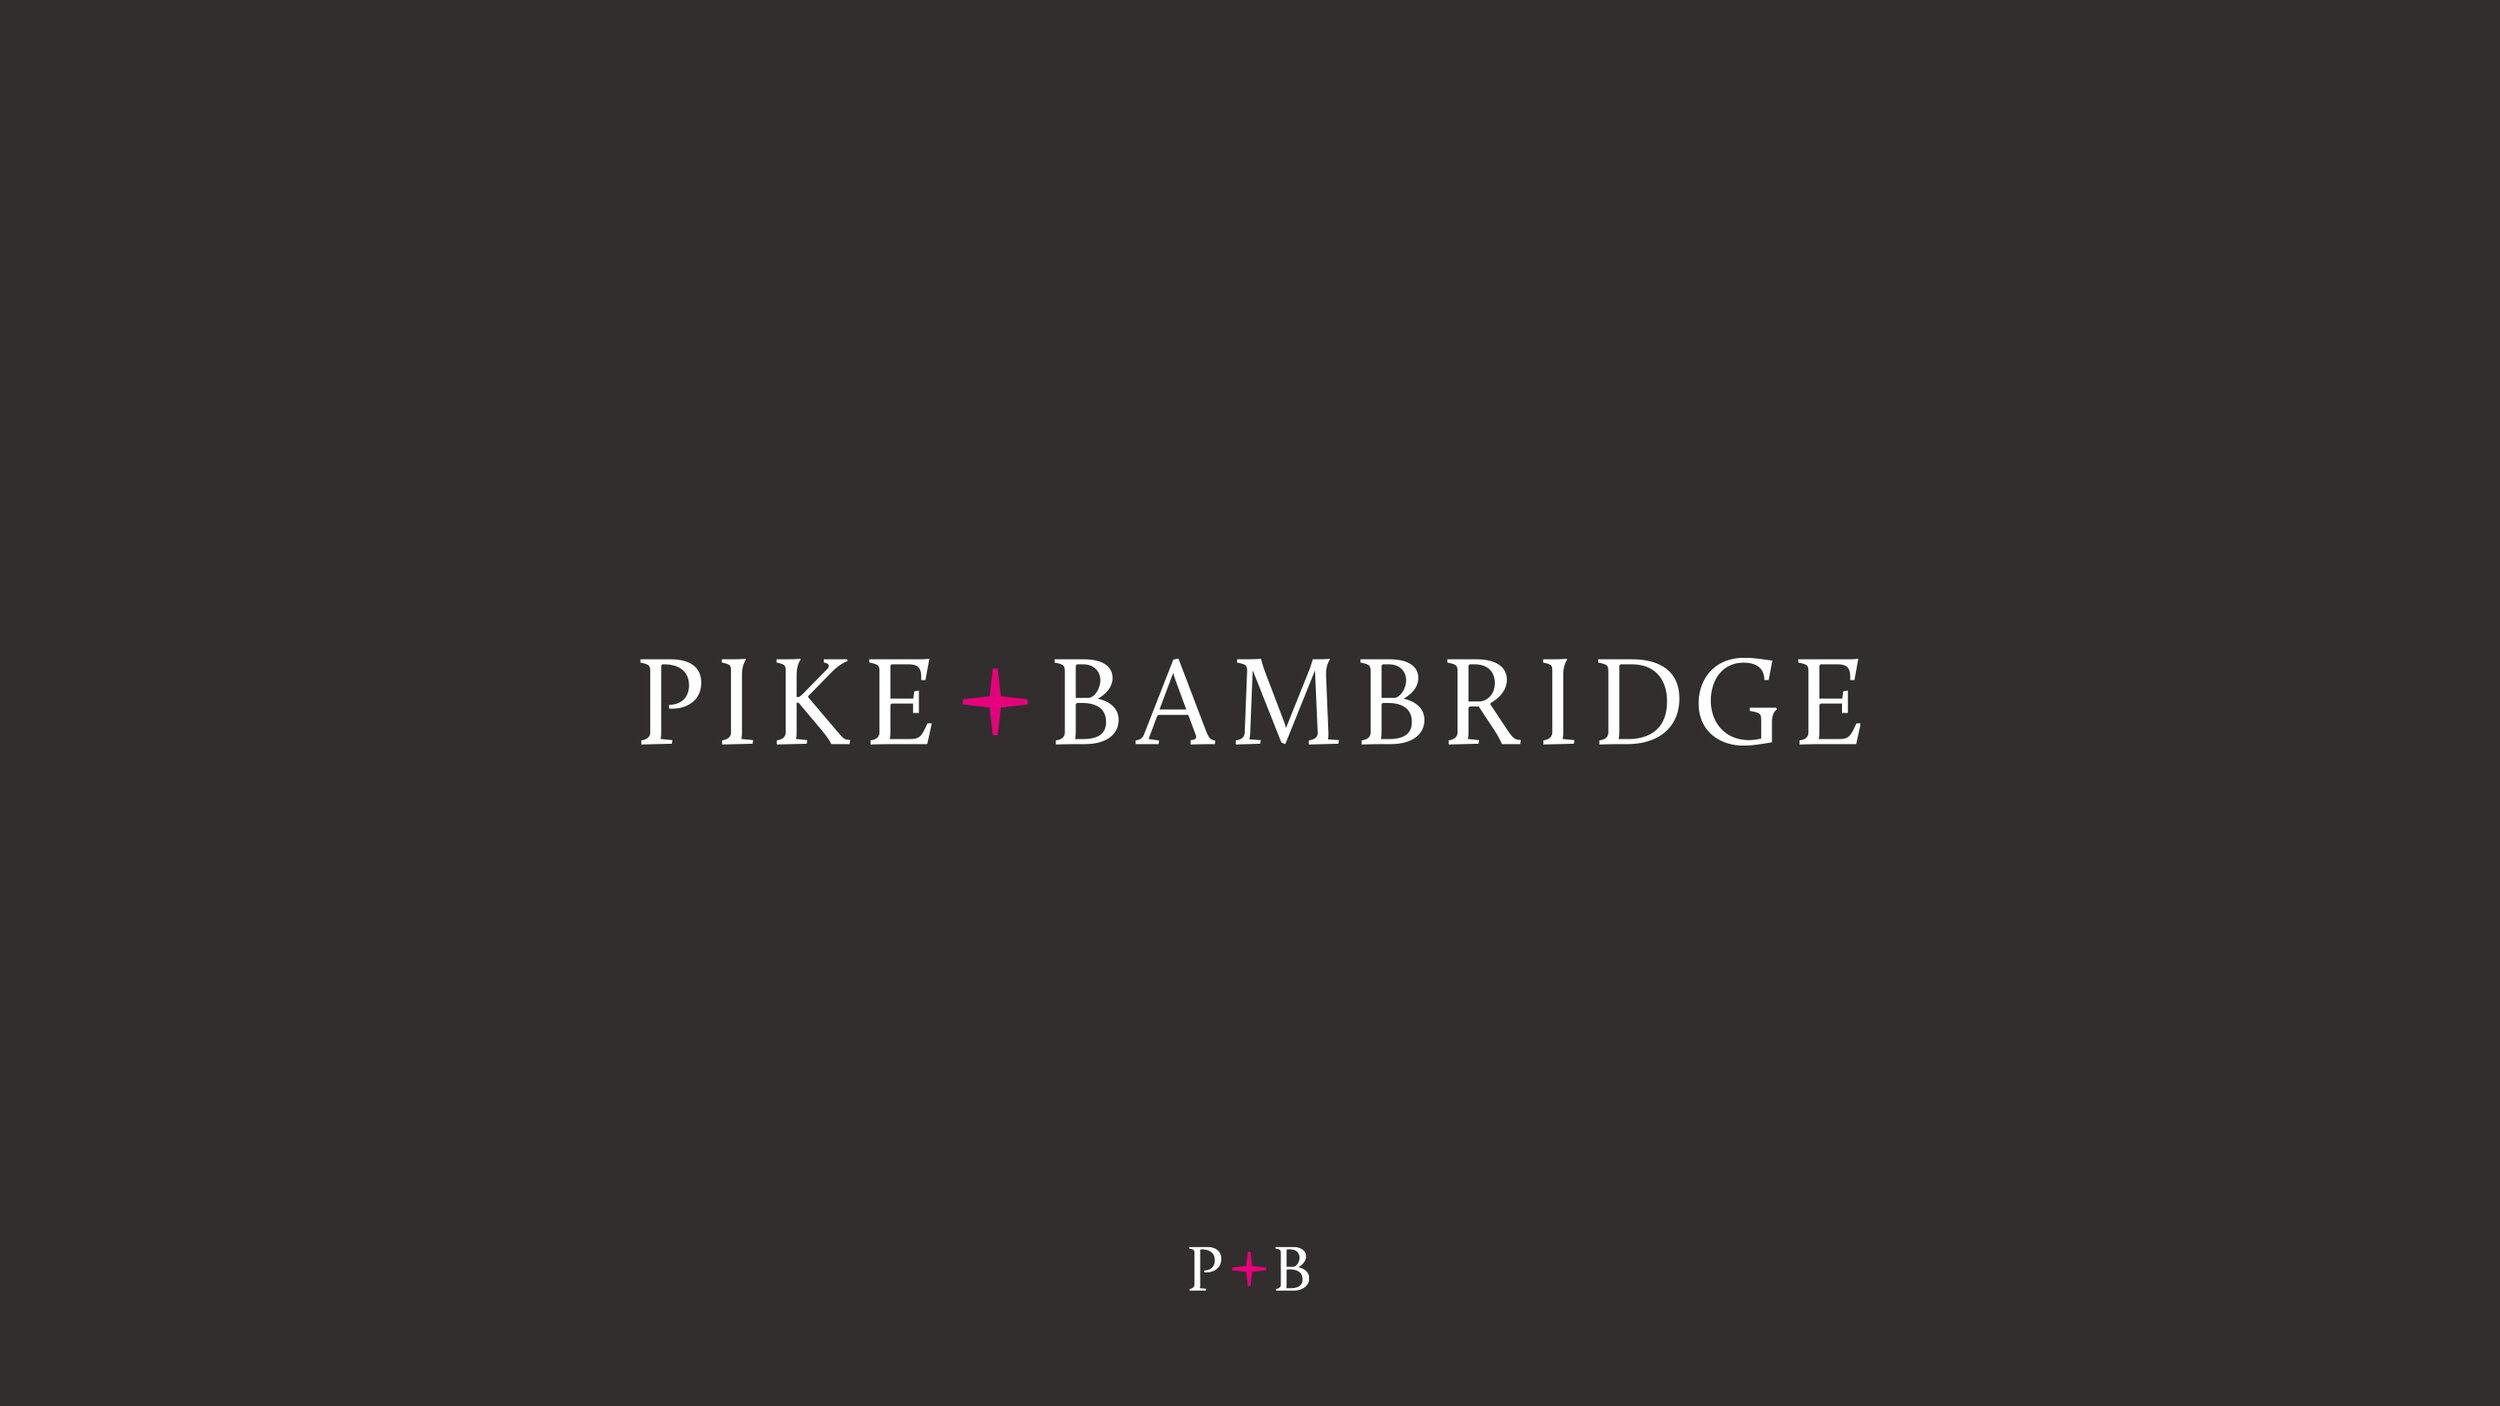 Pike+Bambridge wordmark